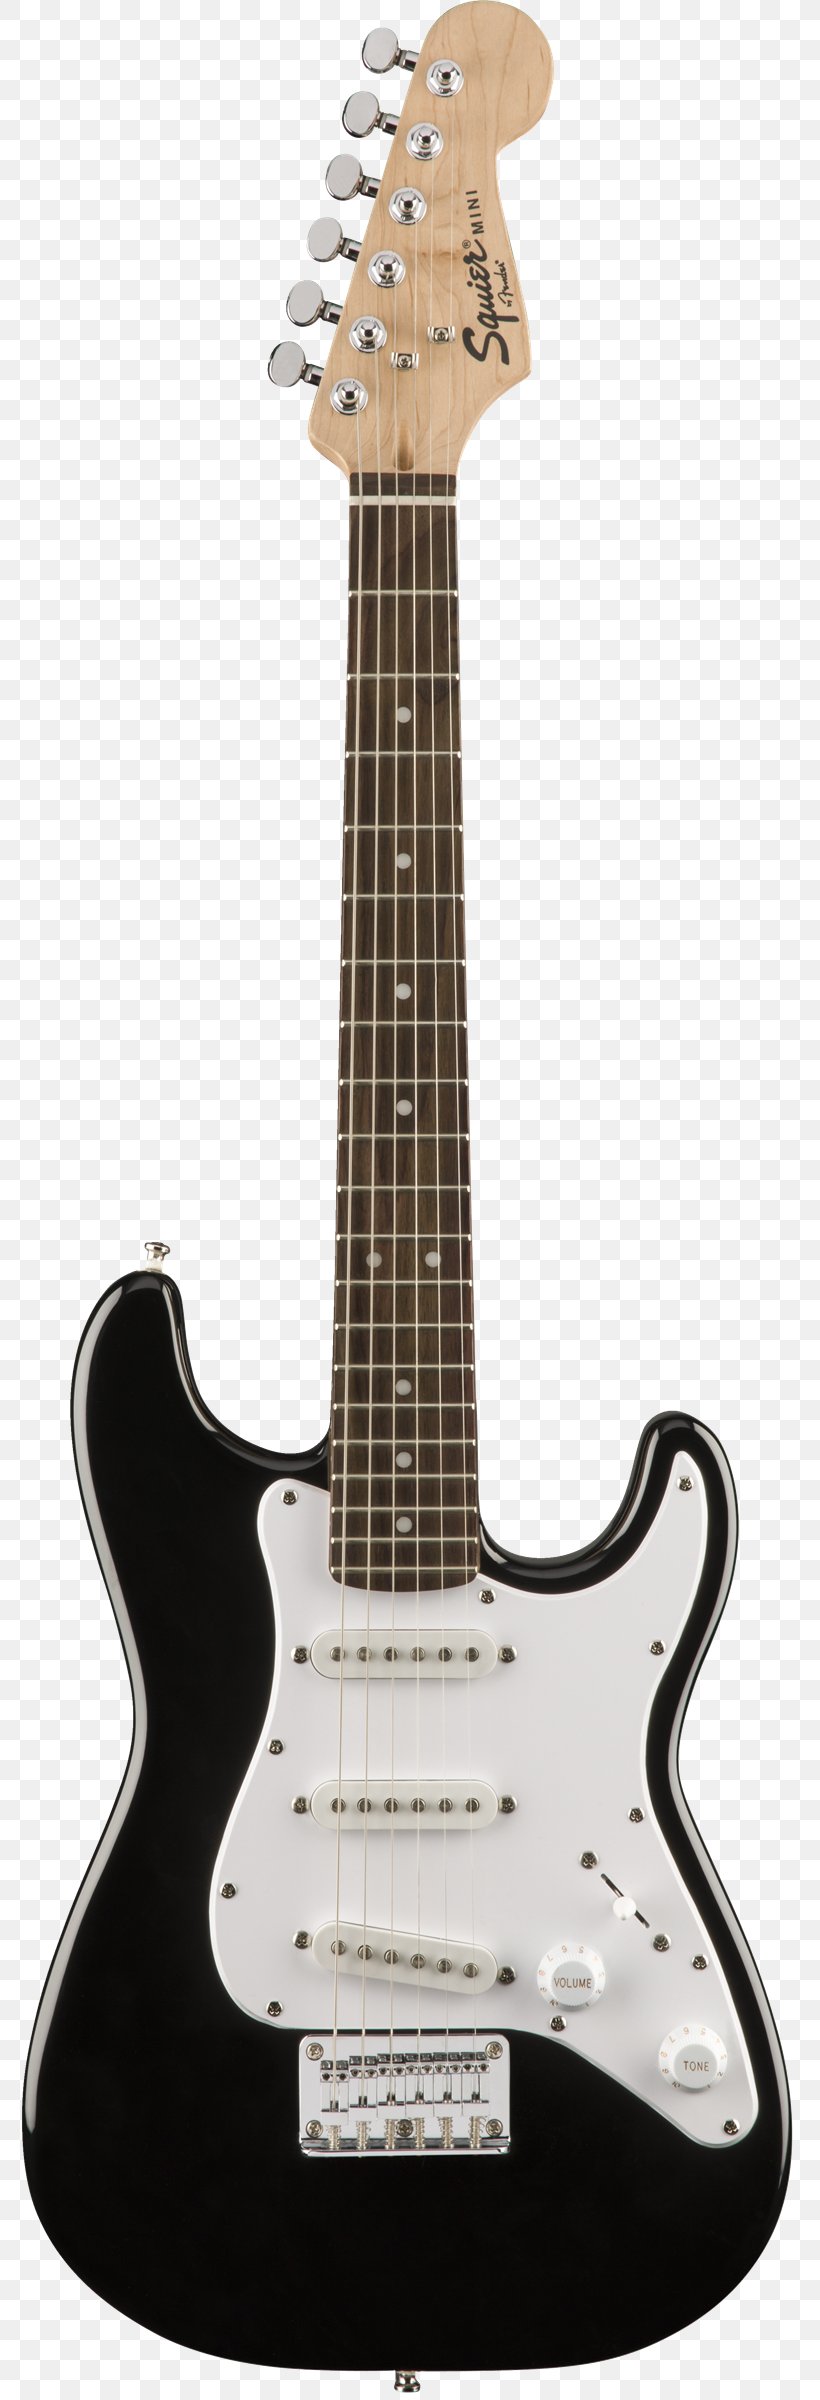 Fender Stratocaster Fender Bullet Fender Contemporary Stratocaster Japan Squier Mini Stratocaster, PNG, 778x2400px, Fender Stratocaster, Acoustic Electric Guitar, Acoustic Guitar, Bass Guitar, Electric Guitar Download Free